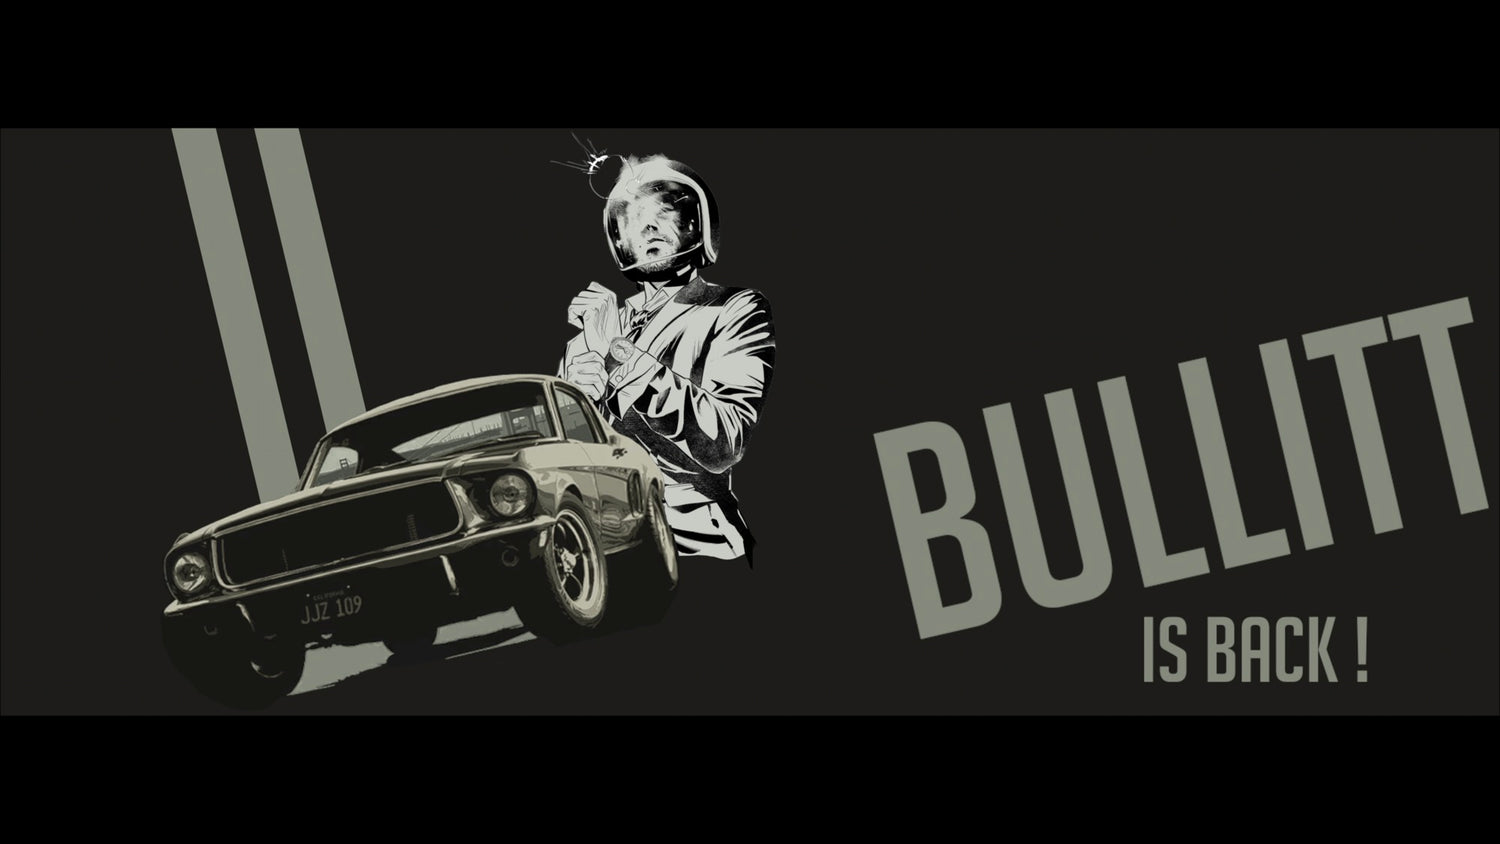 Bullitt is back...on Monday November 28